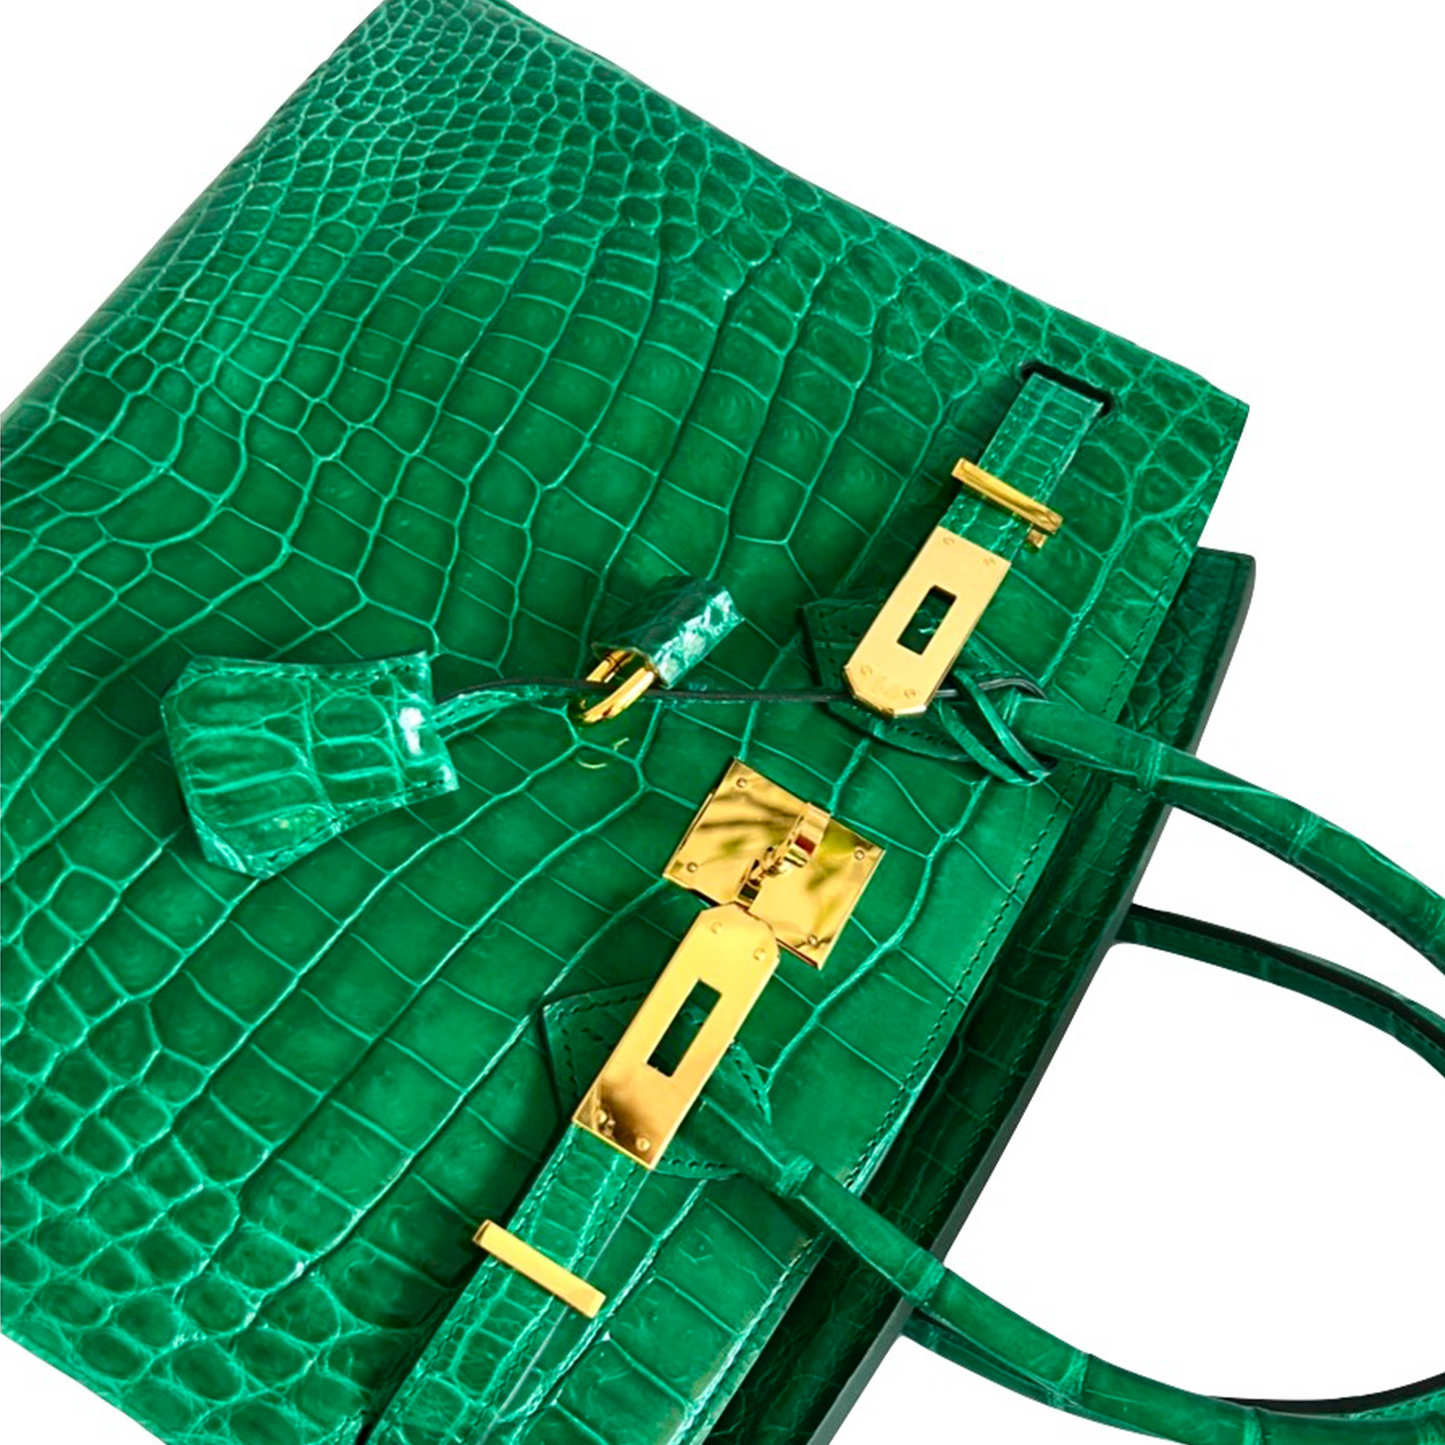 Duchess Handbag in Shiny Green Crocodile Belly Skin